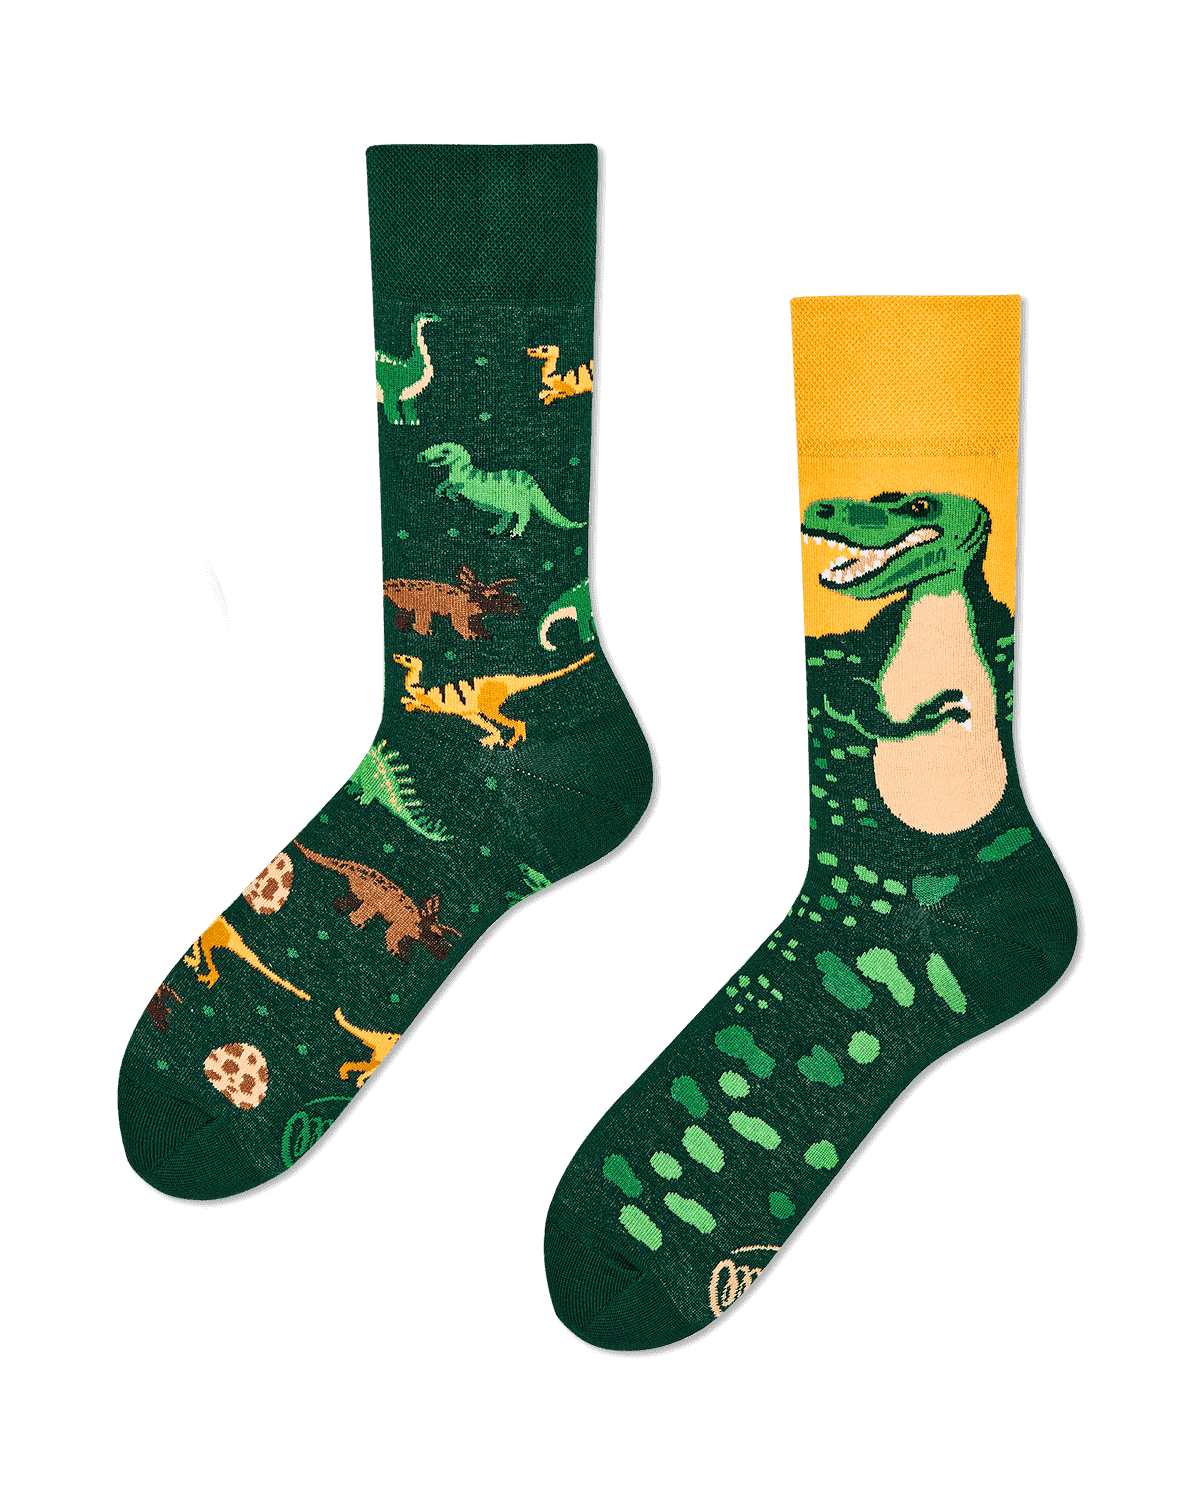 The Dinosaurs Socken für Kinder und Erwachsene